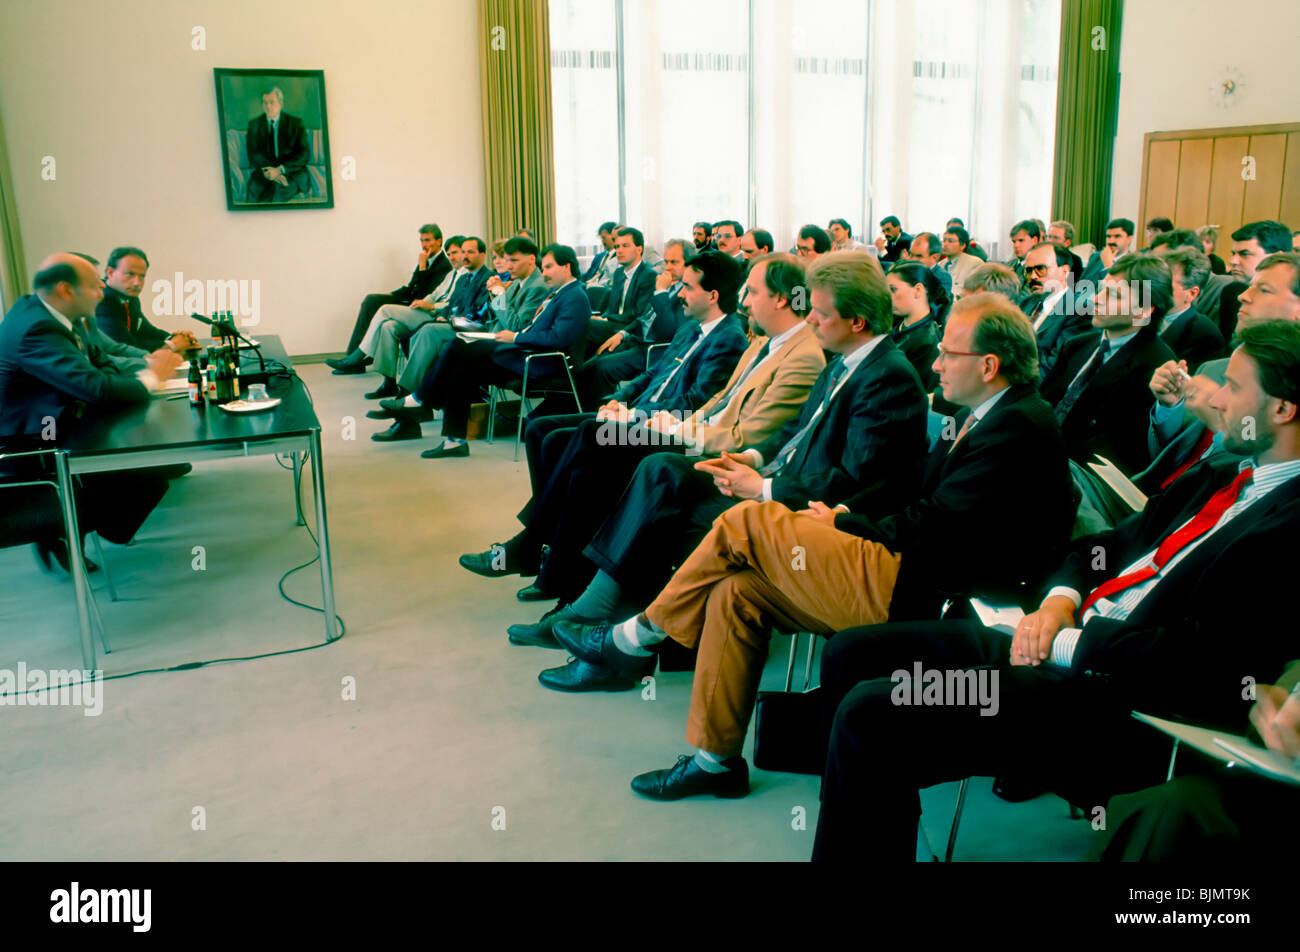 Berlin, Allemagne - allemand Réunion d'affaires, présentation avant de la foule, de l'auditoire (ex-est) et les hommes de l'Allemagne de l'Ouest. Années 1980 Banque D'Images